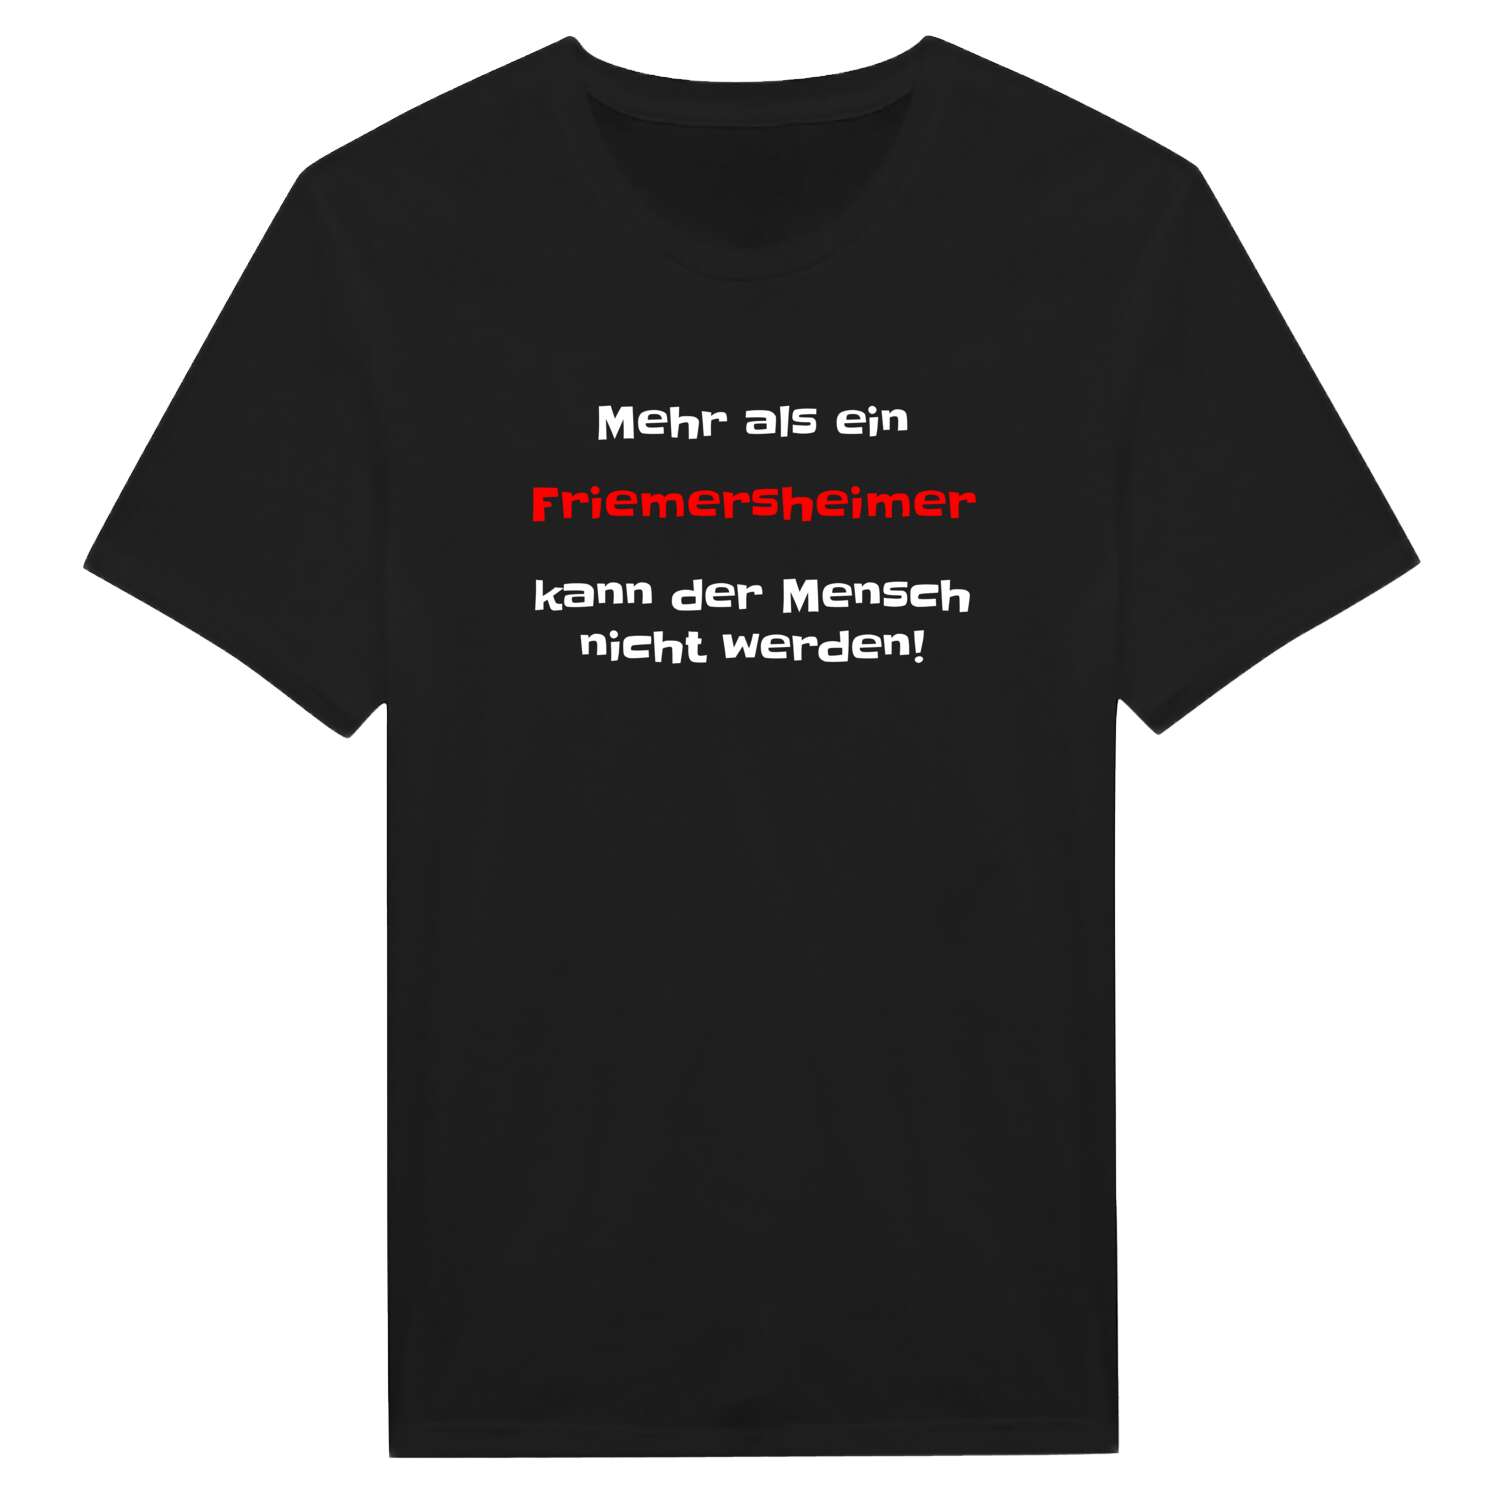 Friemersheim T-Shirt »Mehr als ein«